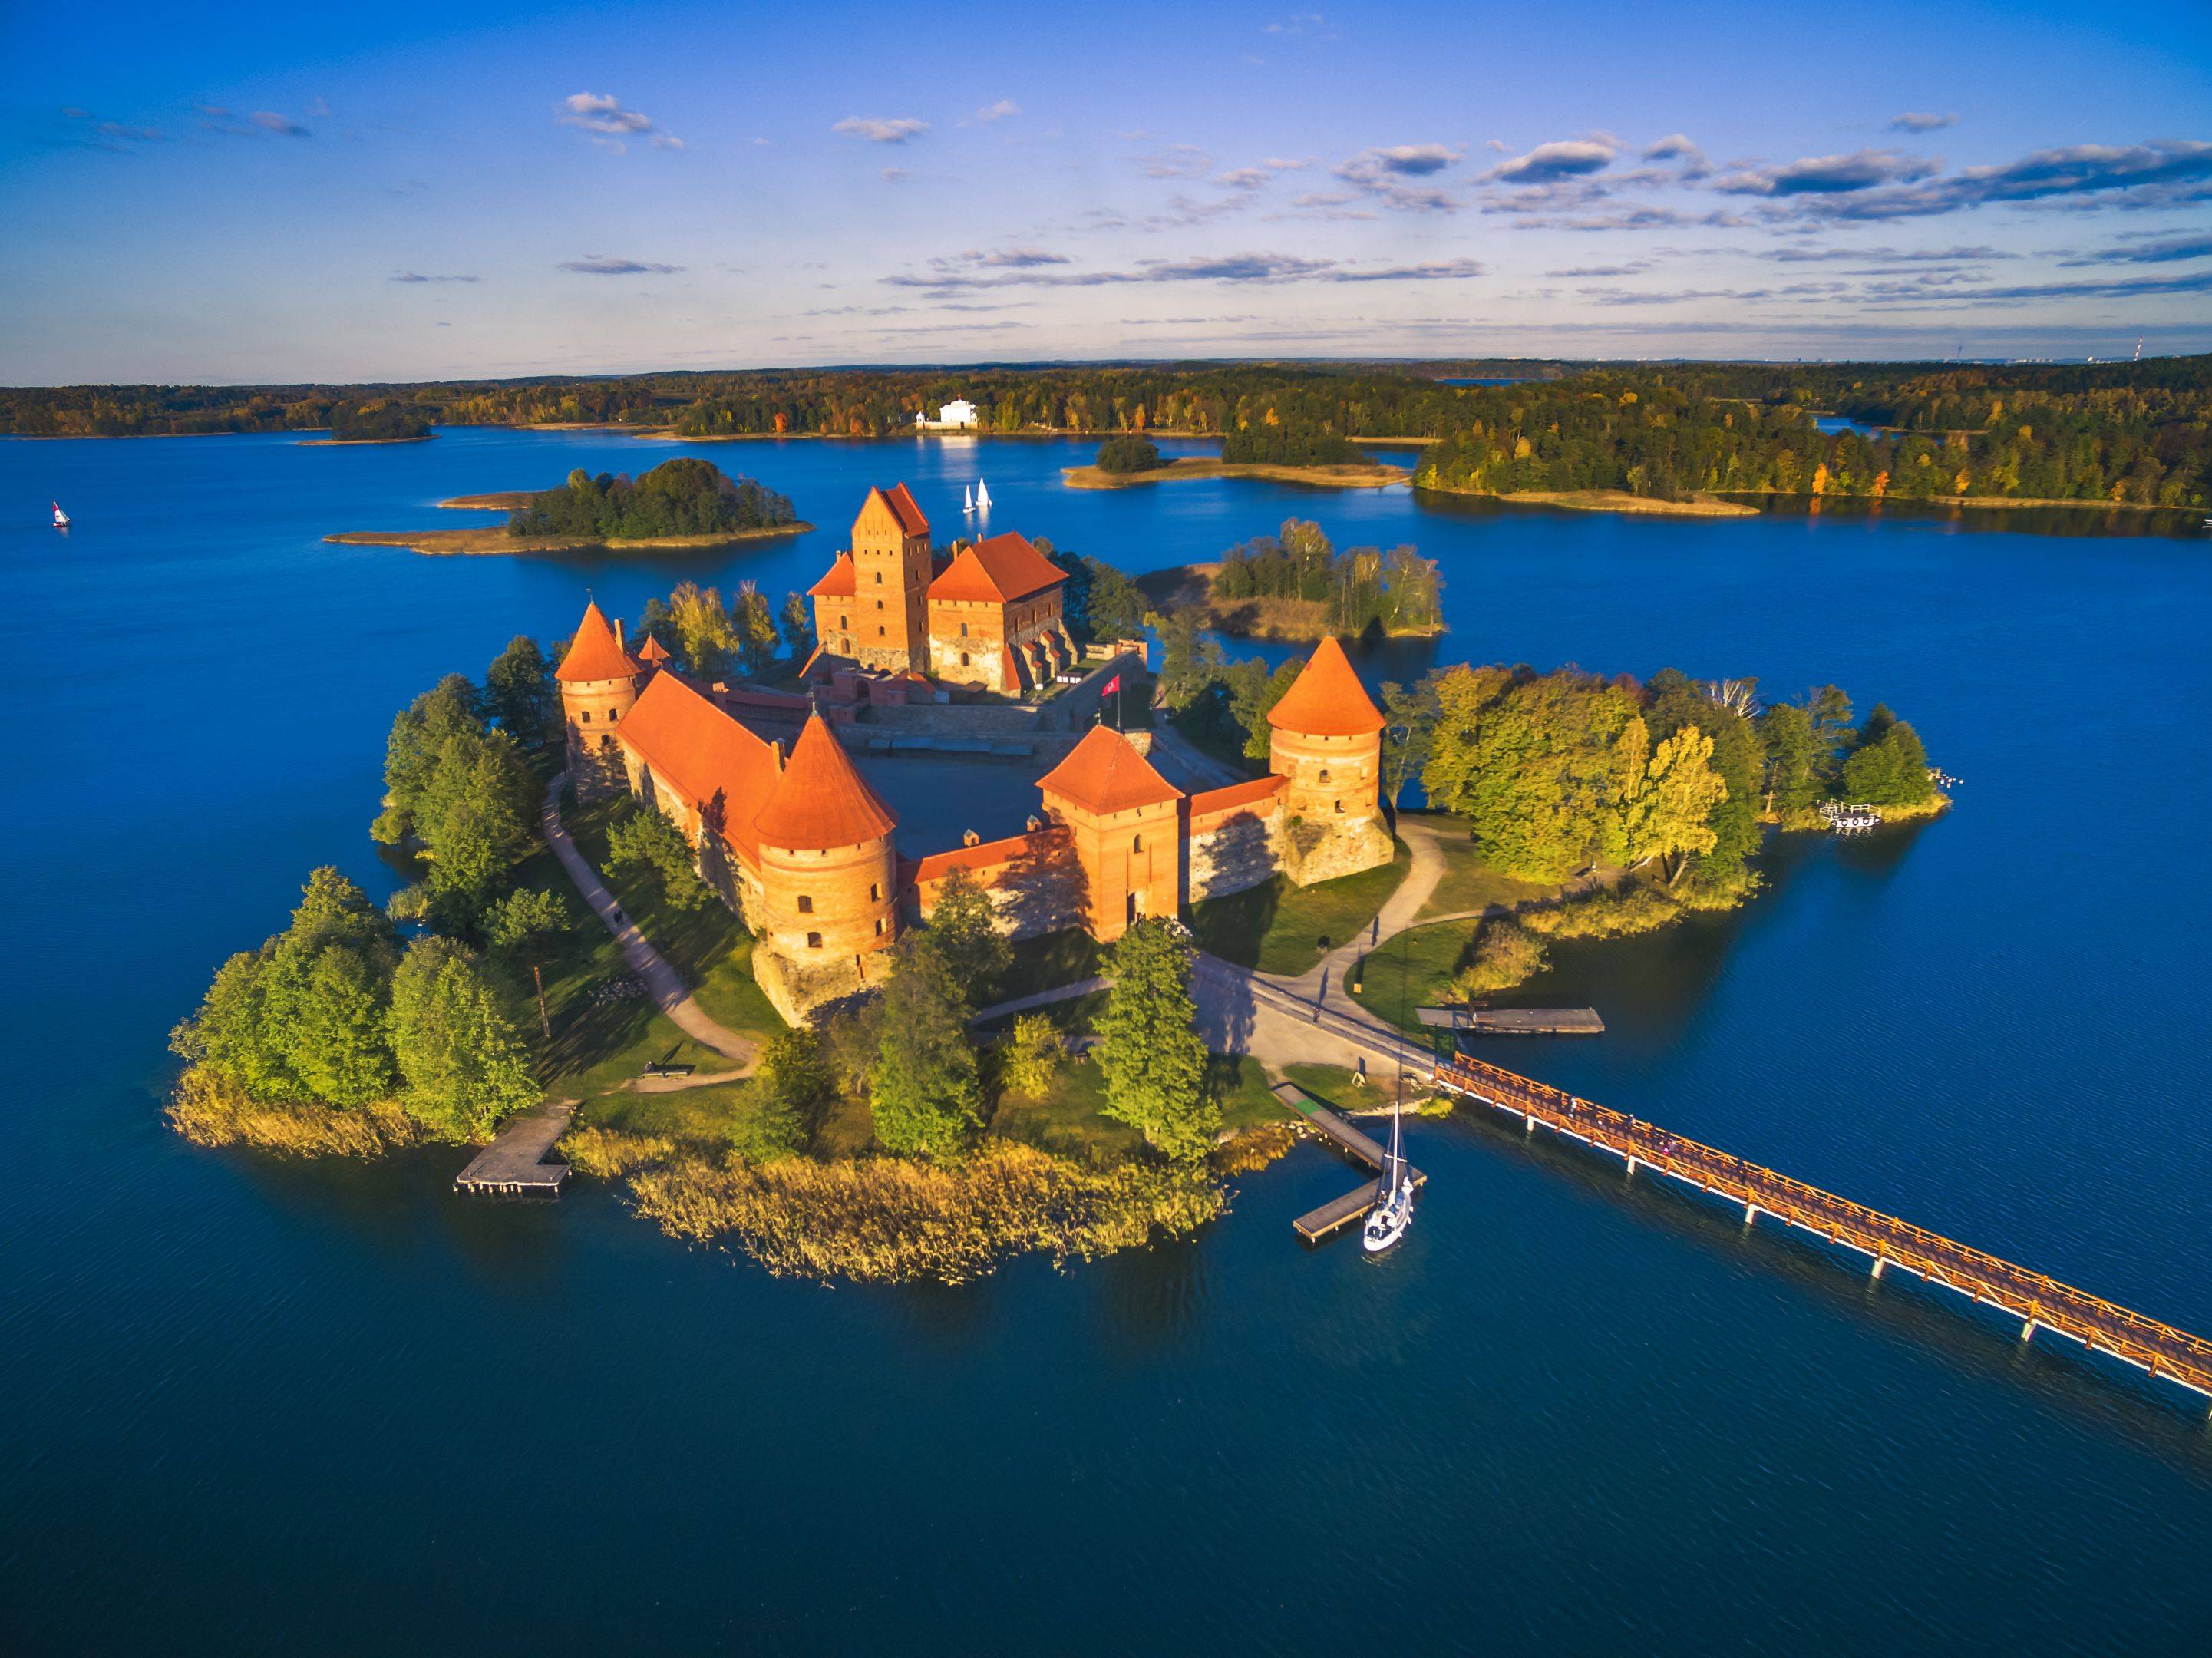 De Vilnius a Kaunas: Lagos, castillos y monasterios